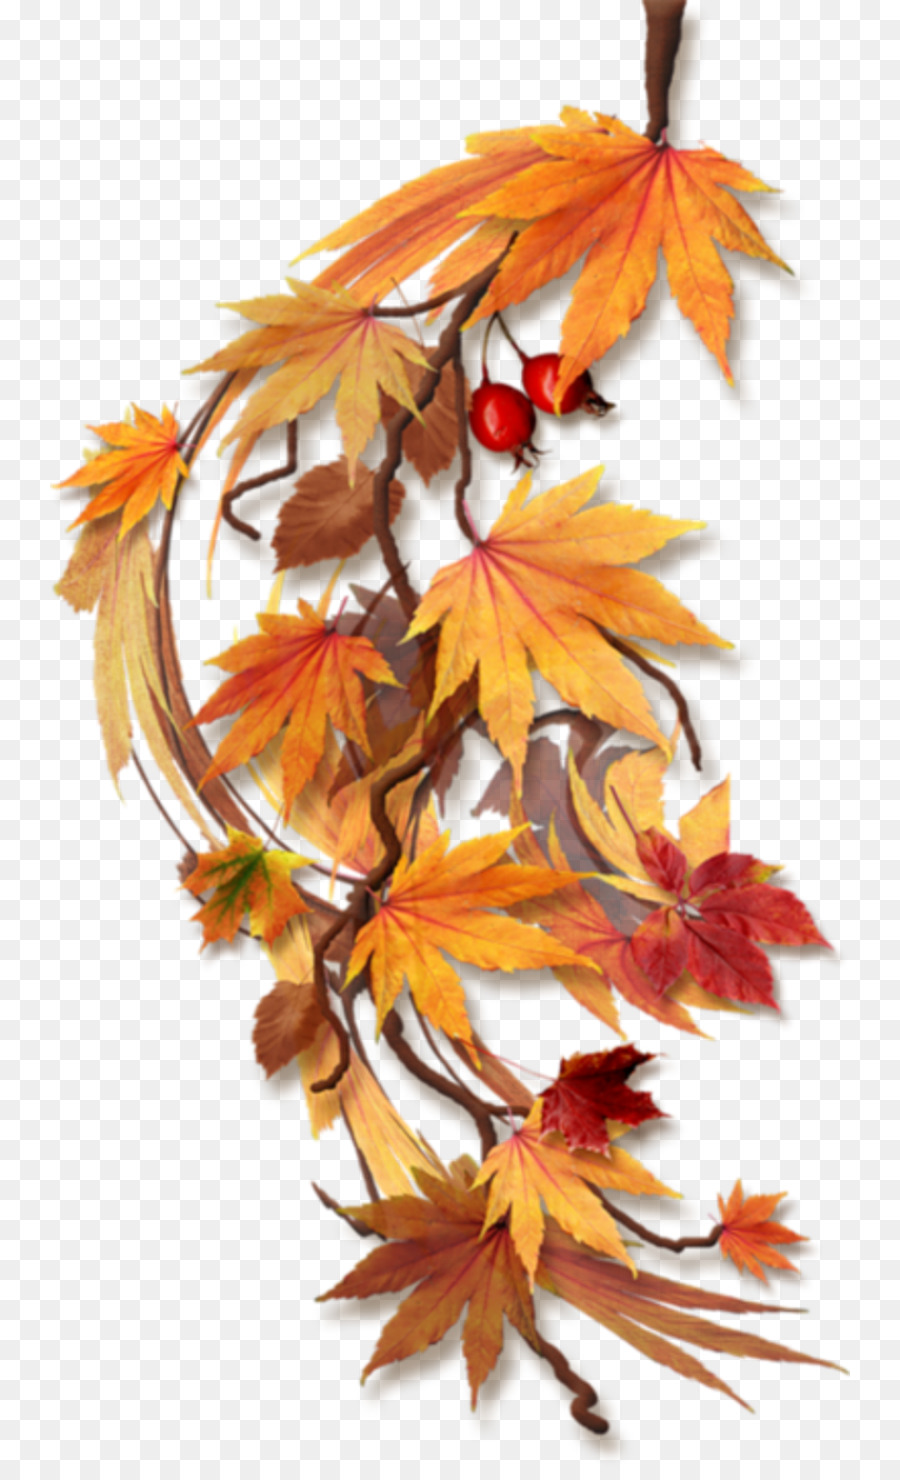 Herbst Clip art - fallen